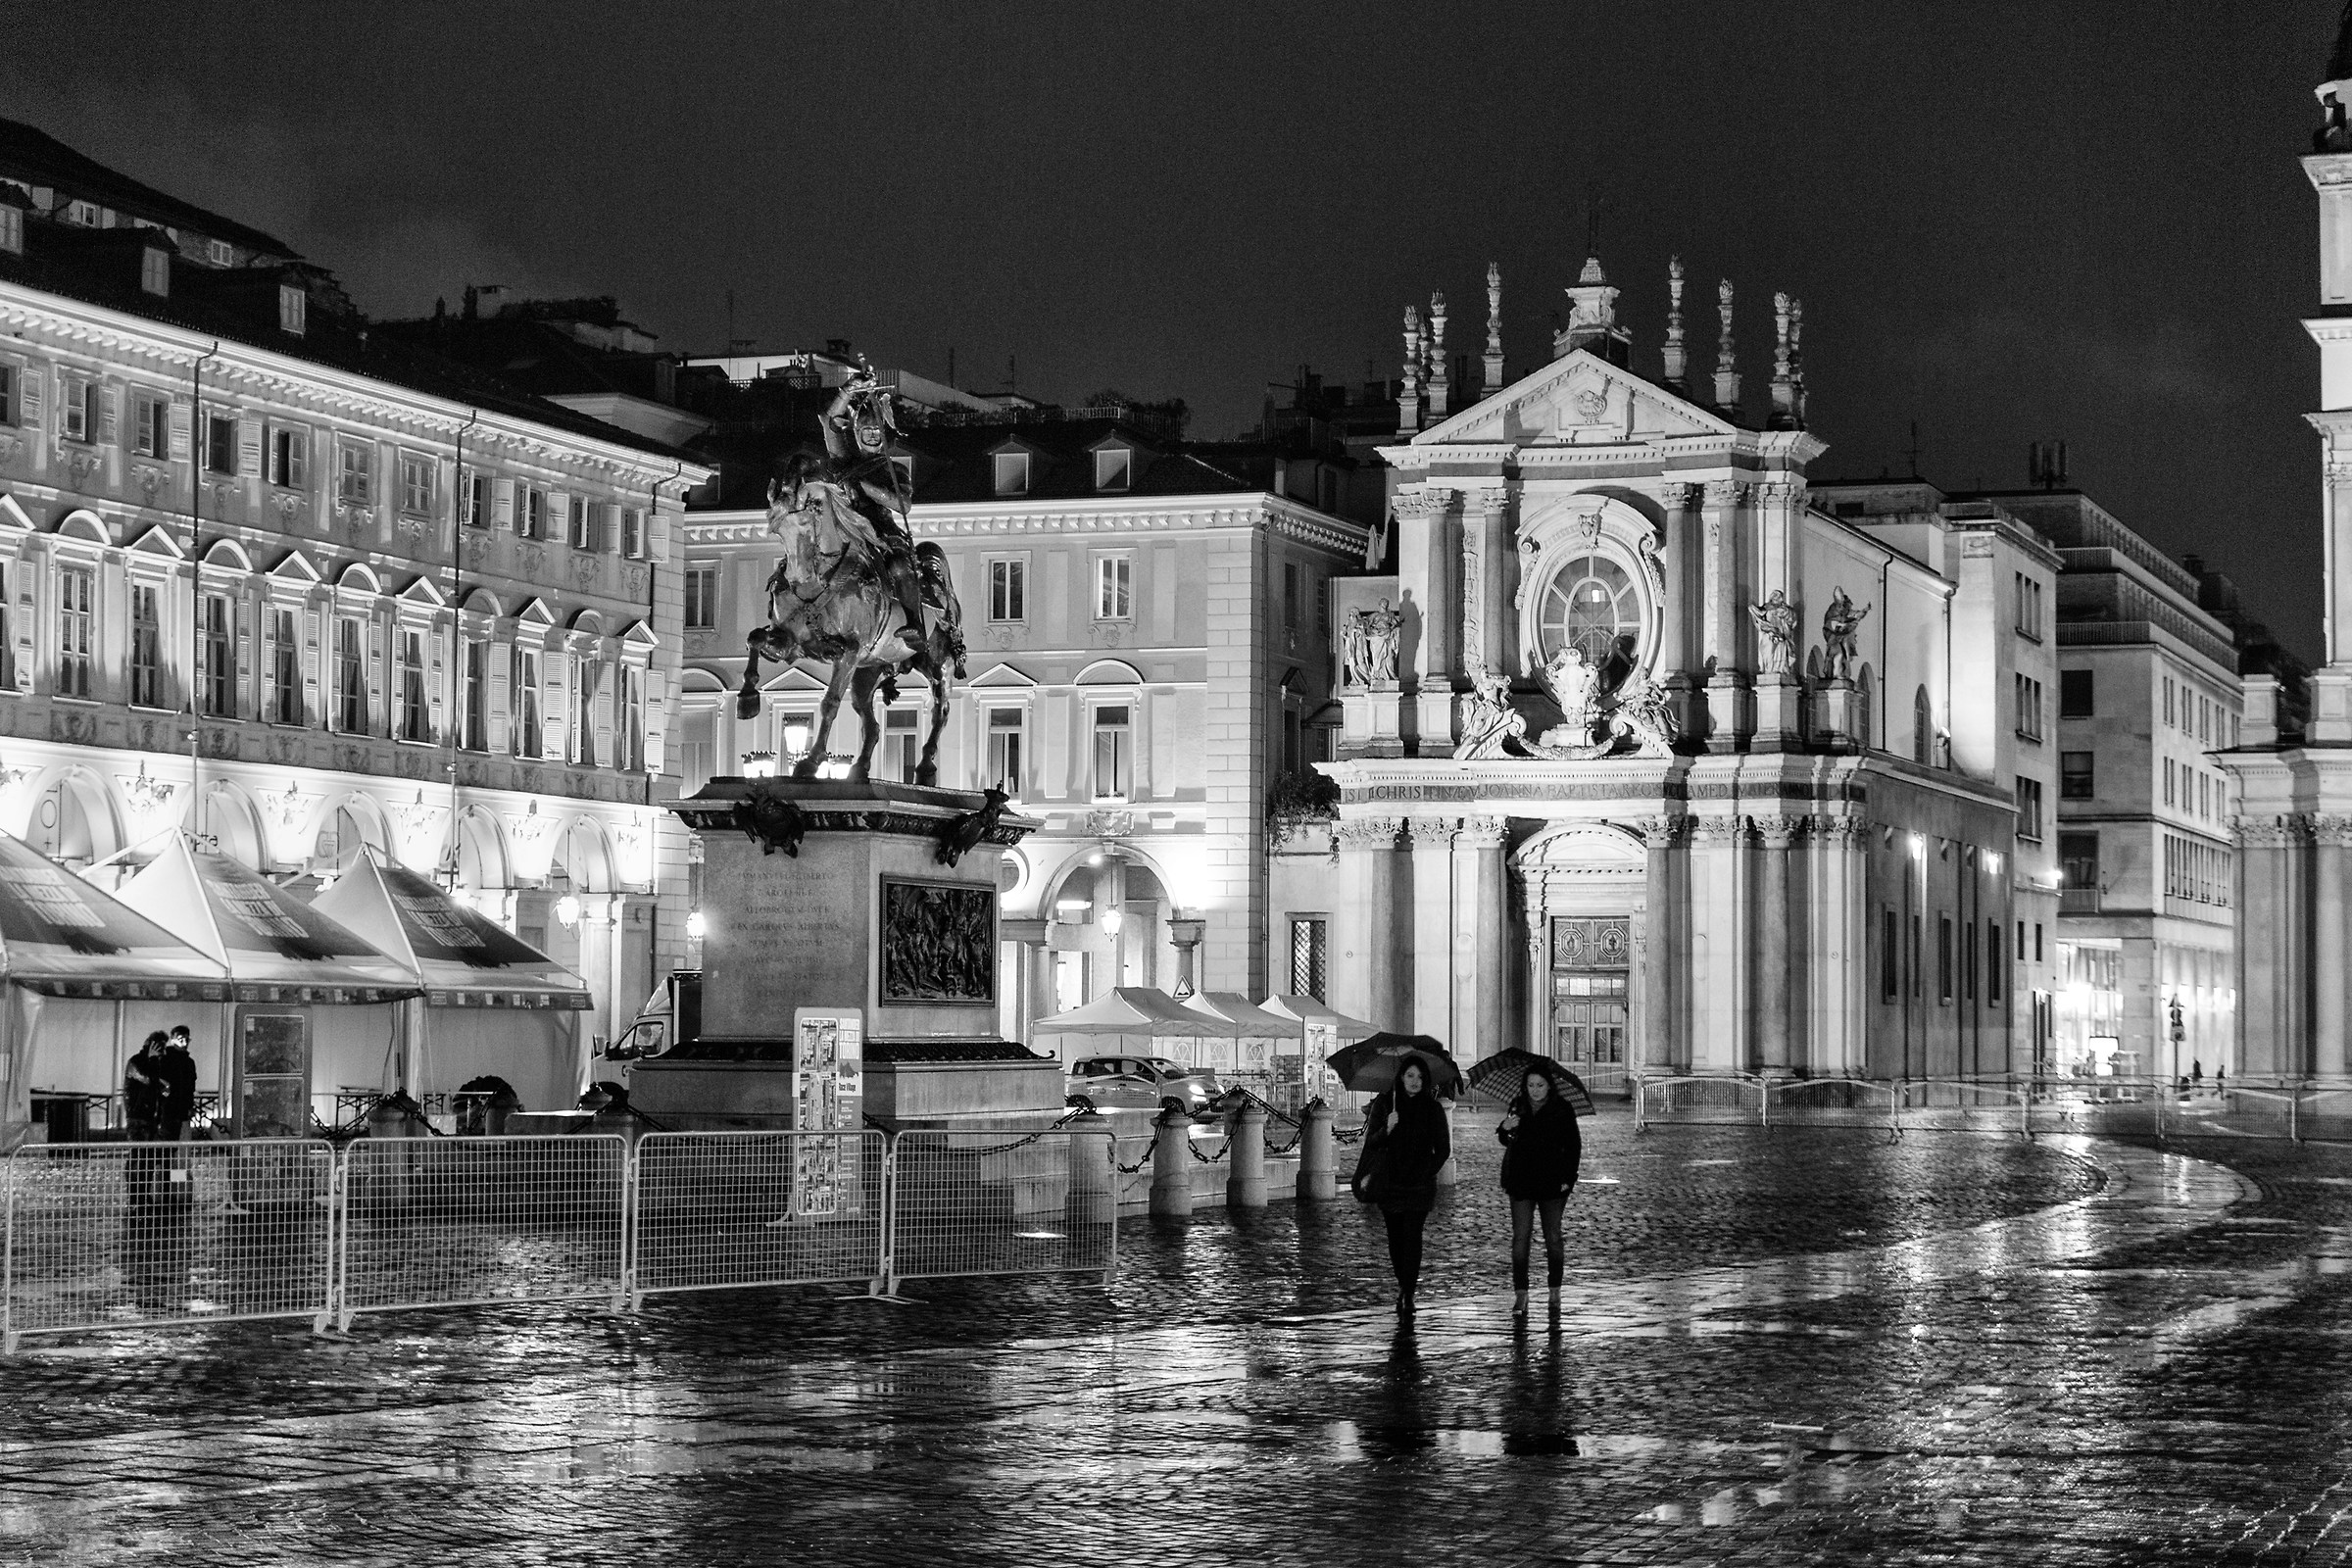 Turin, night in Piazza San Carlo...